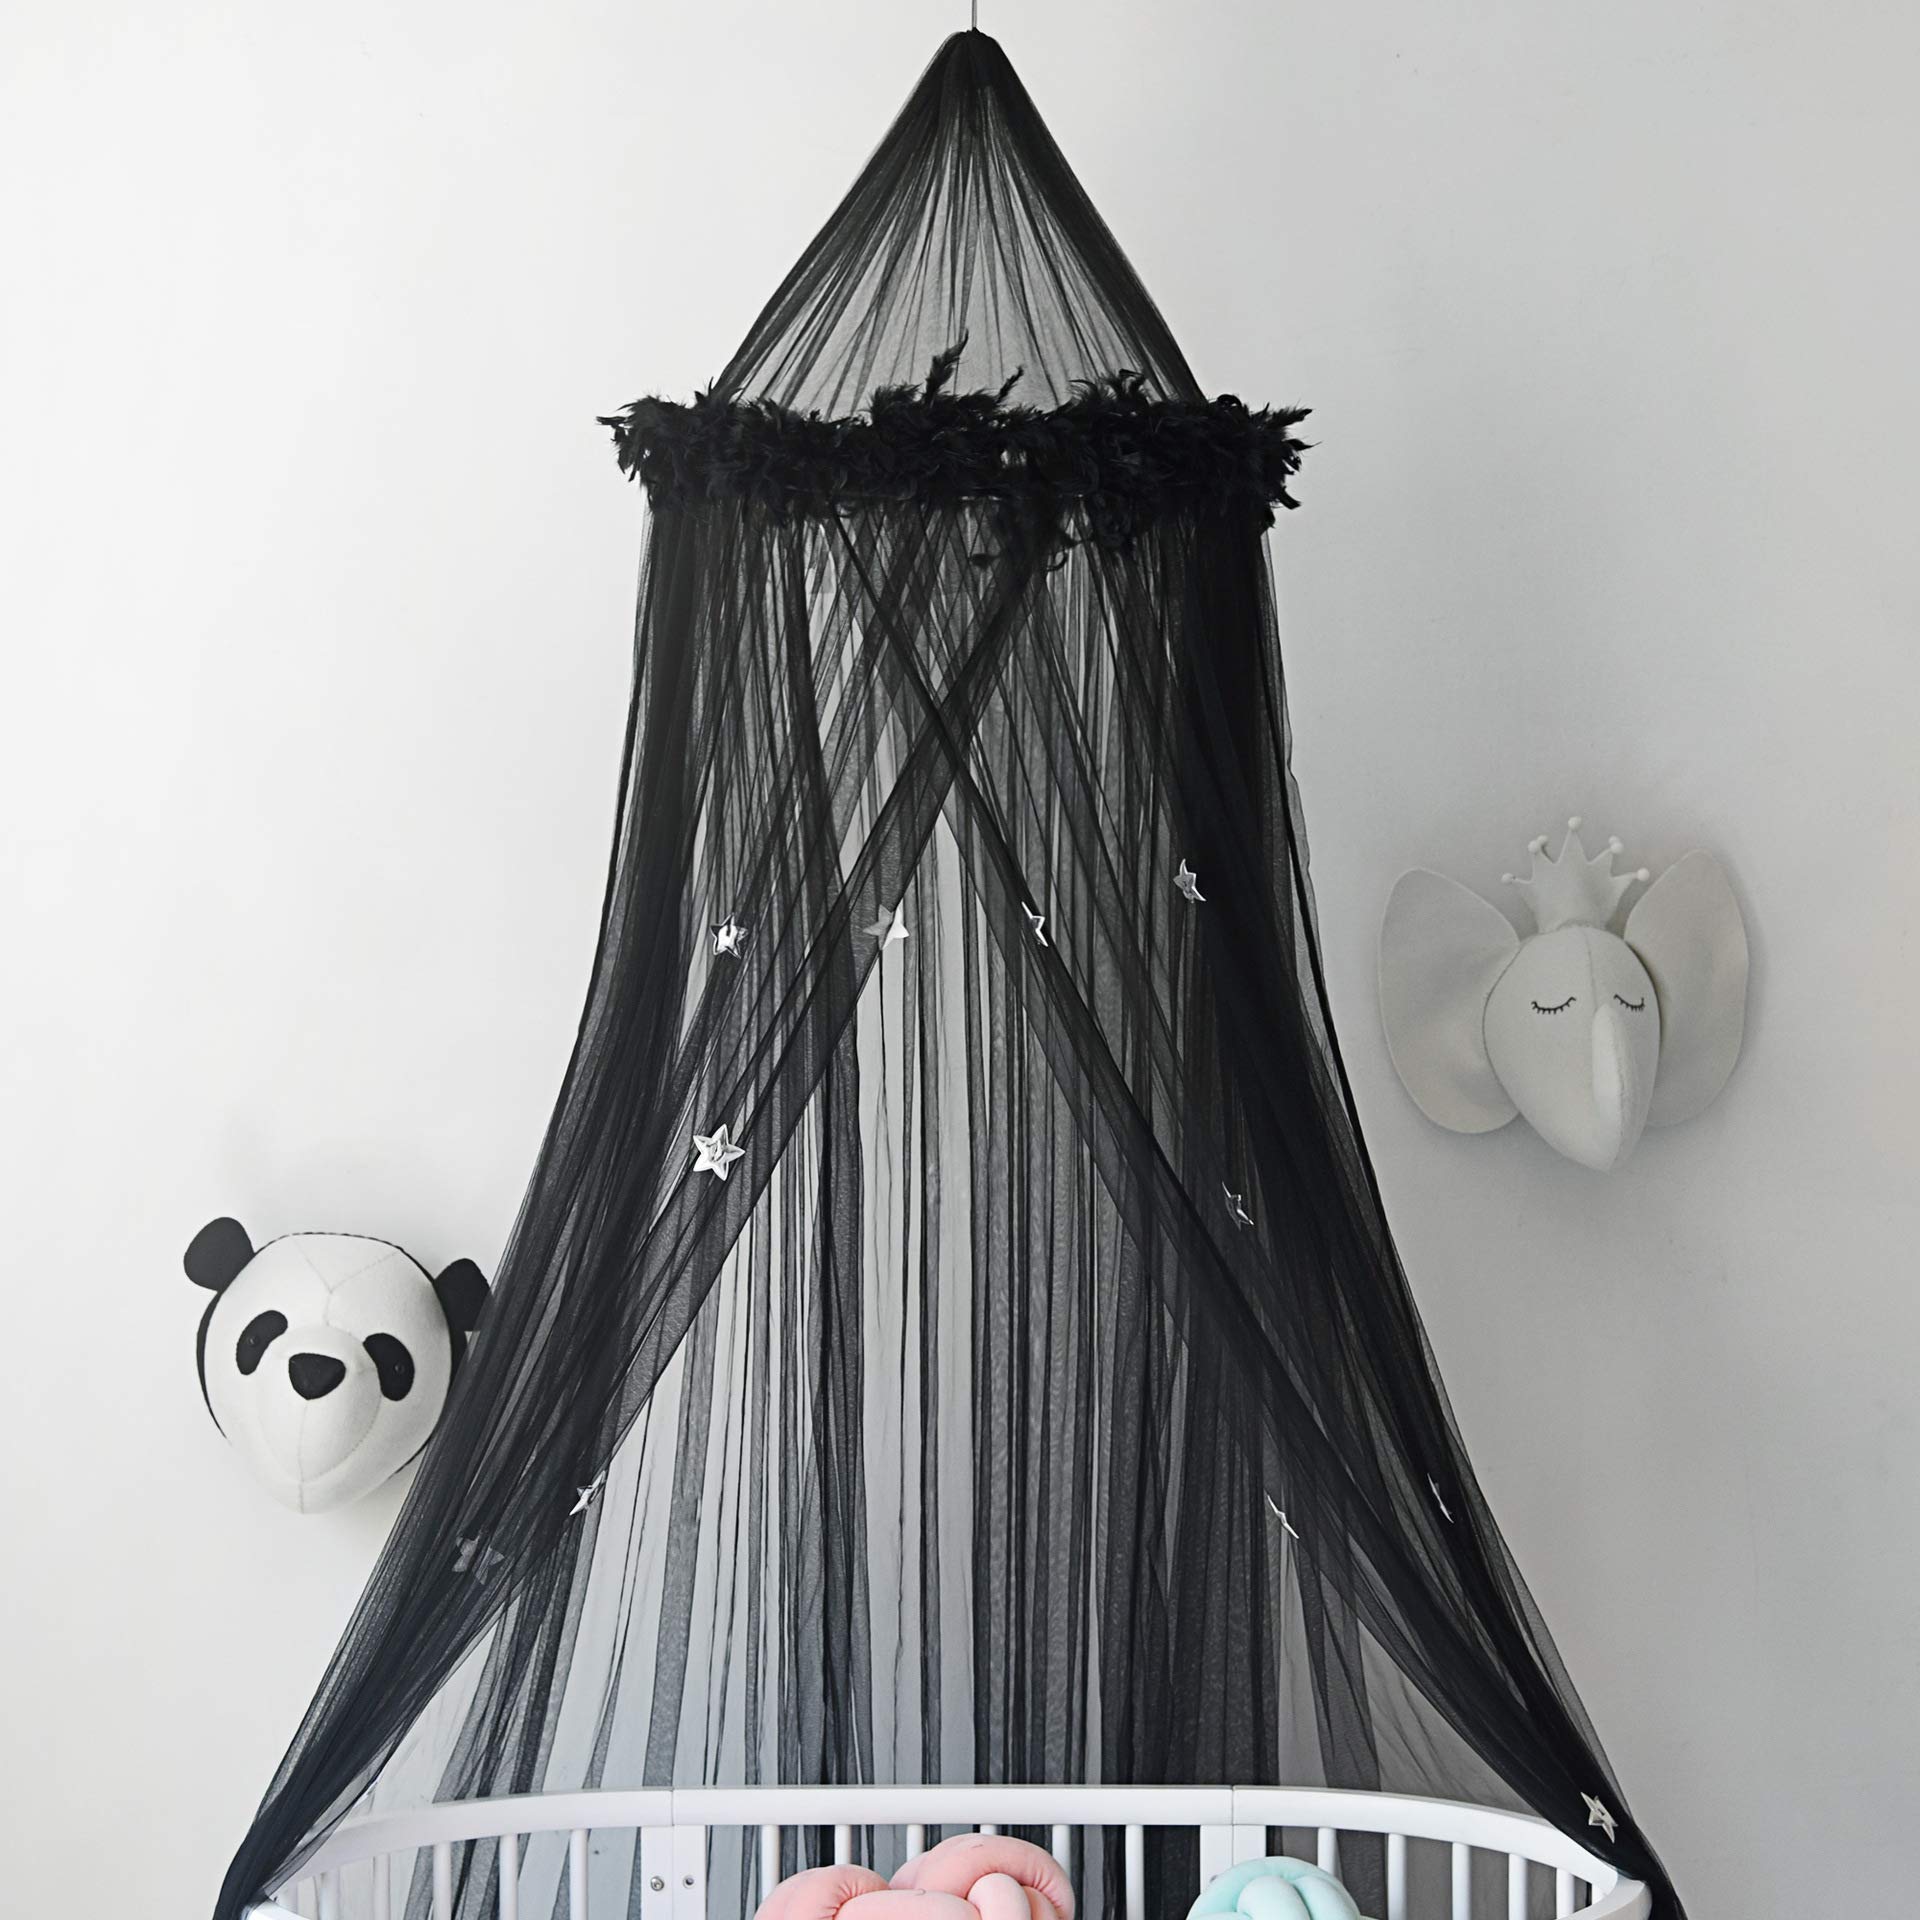 SHIKUN Betthimmel Moskitonetz Vorhänge mit Federn und Sternen Nette schöne Dekoration für Babys Mädchen Kleinkinder und Teen Schlafzimmer, schwarz